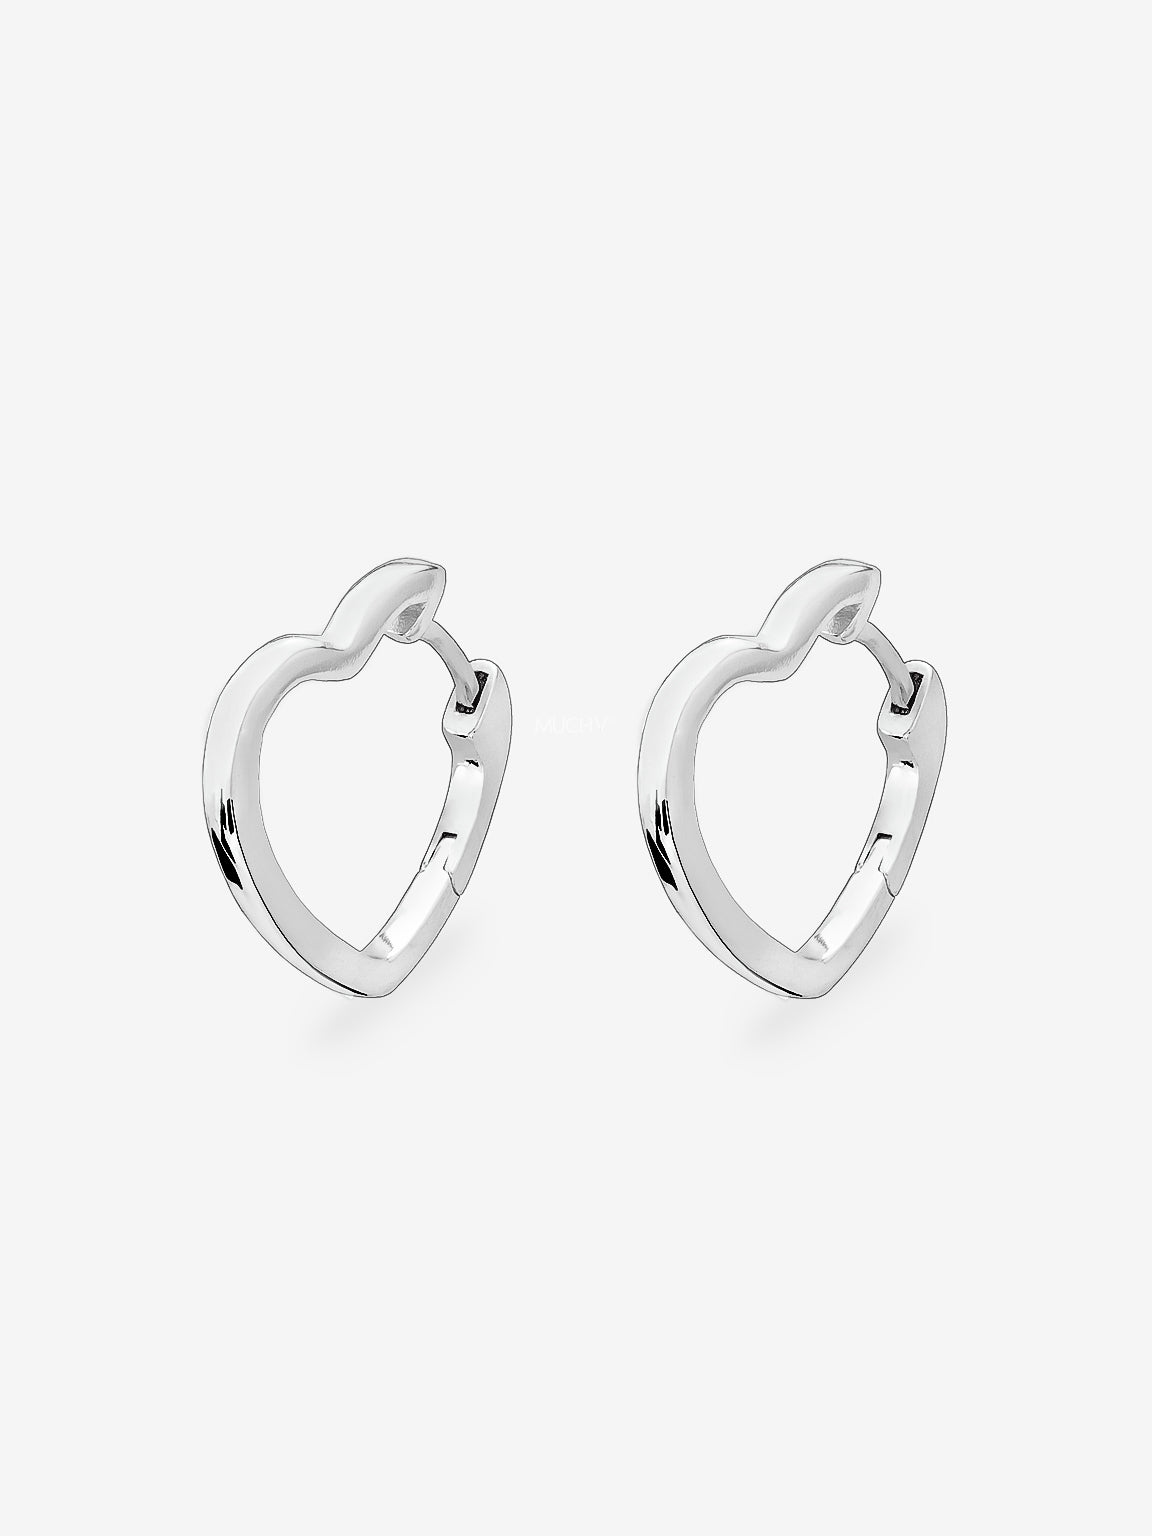 Silver Heart Hoop Earrings - Small